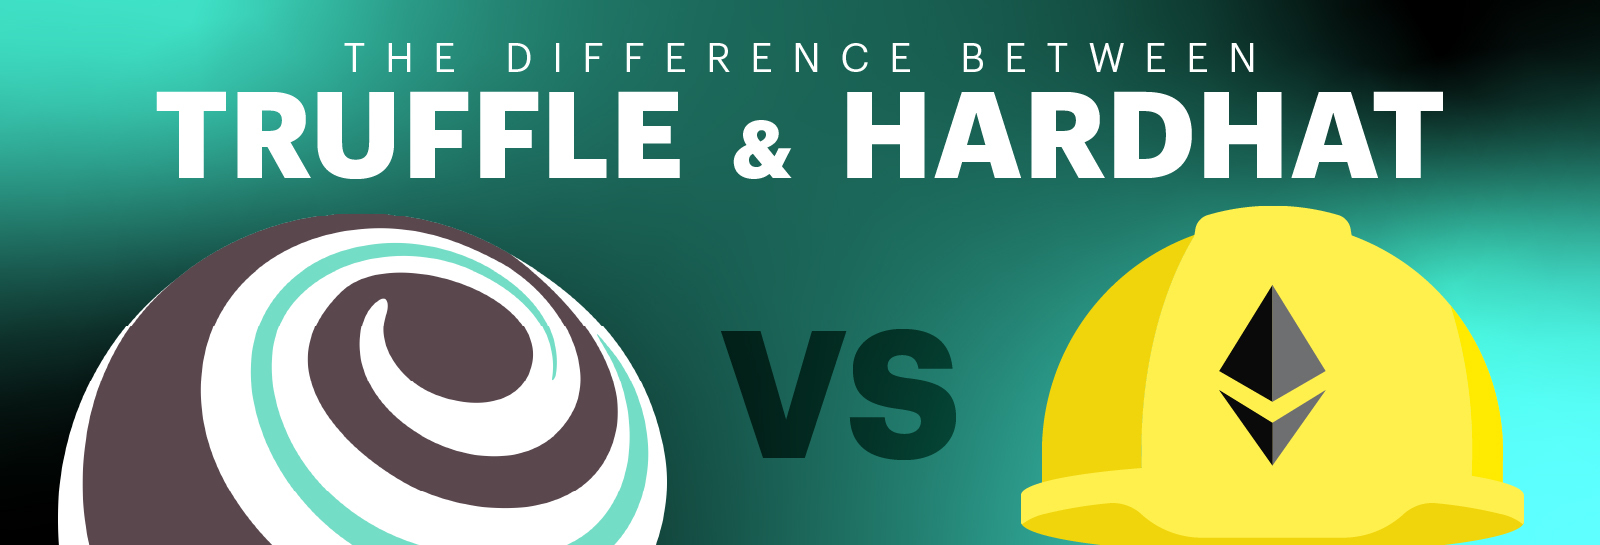 Blog header - truffle vs hardhat